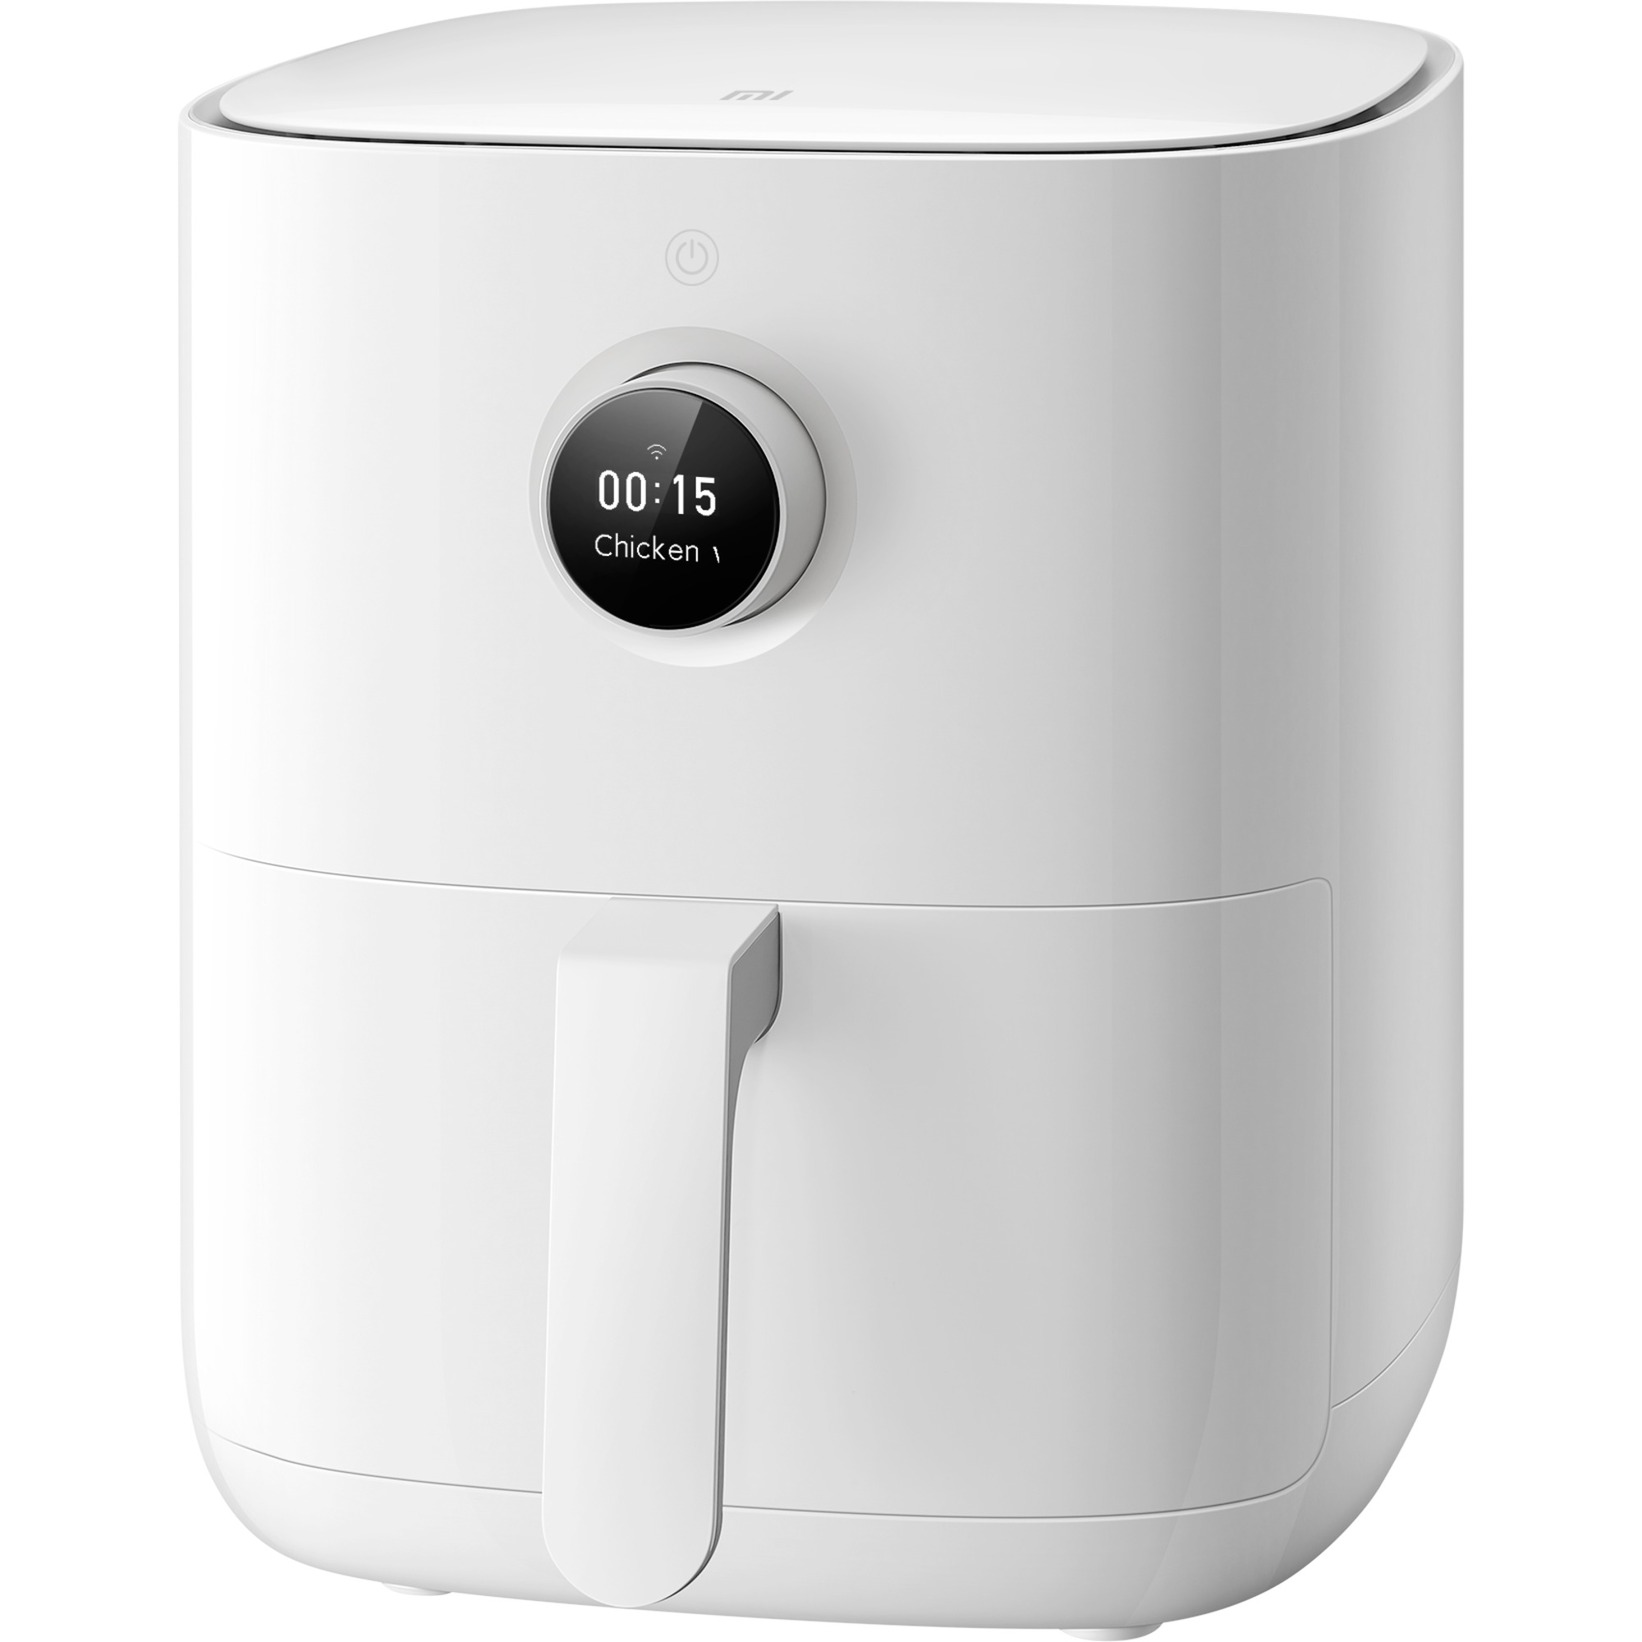 Image of Alternate - Mi Smart Air Fryer, Heißluftfritteuse online einkaufen bei Alternate